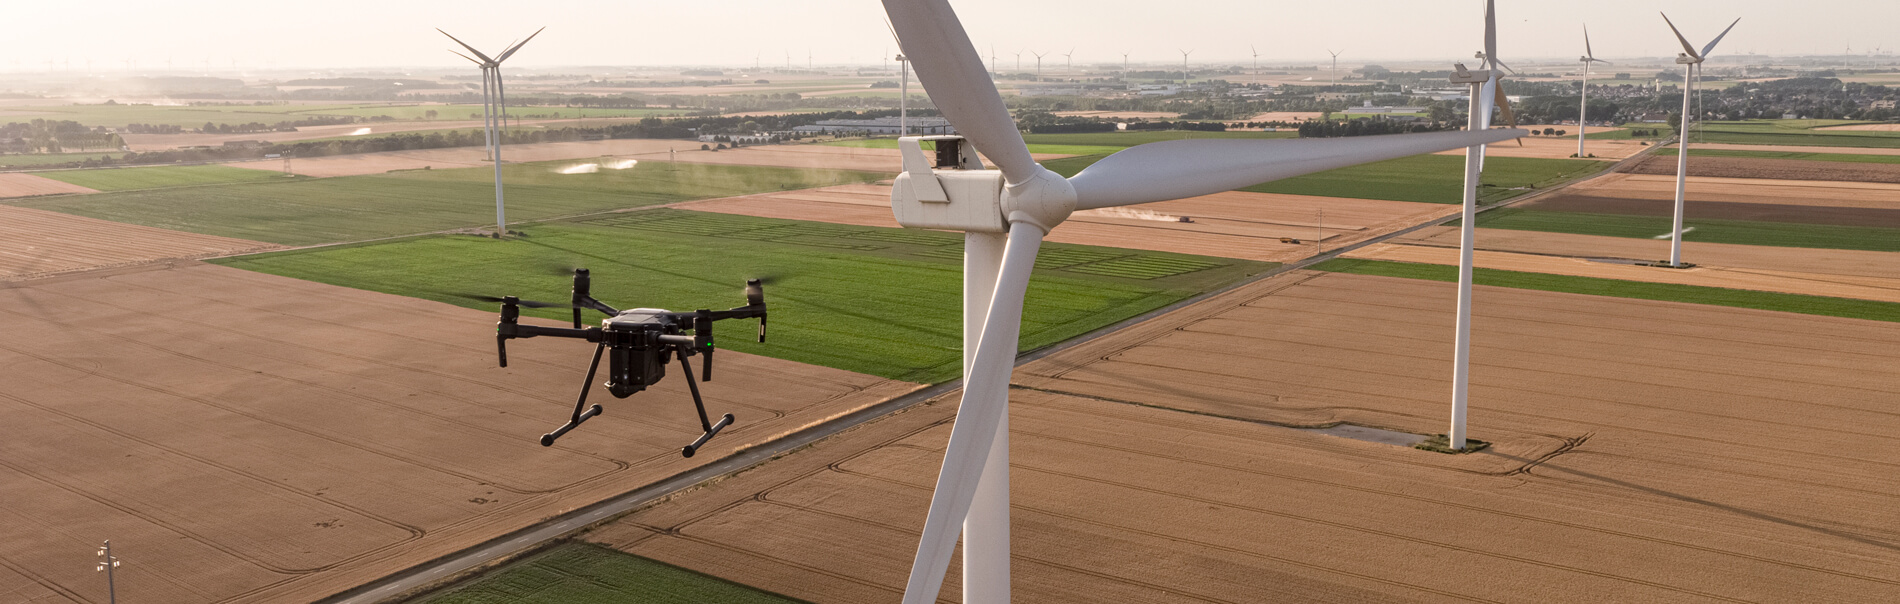 droniste inspection eolienne - Spécialiste en imagerie aérienne par drone